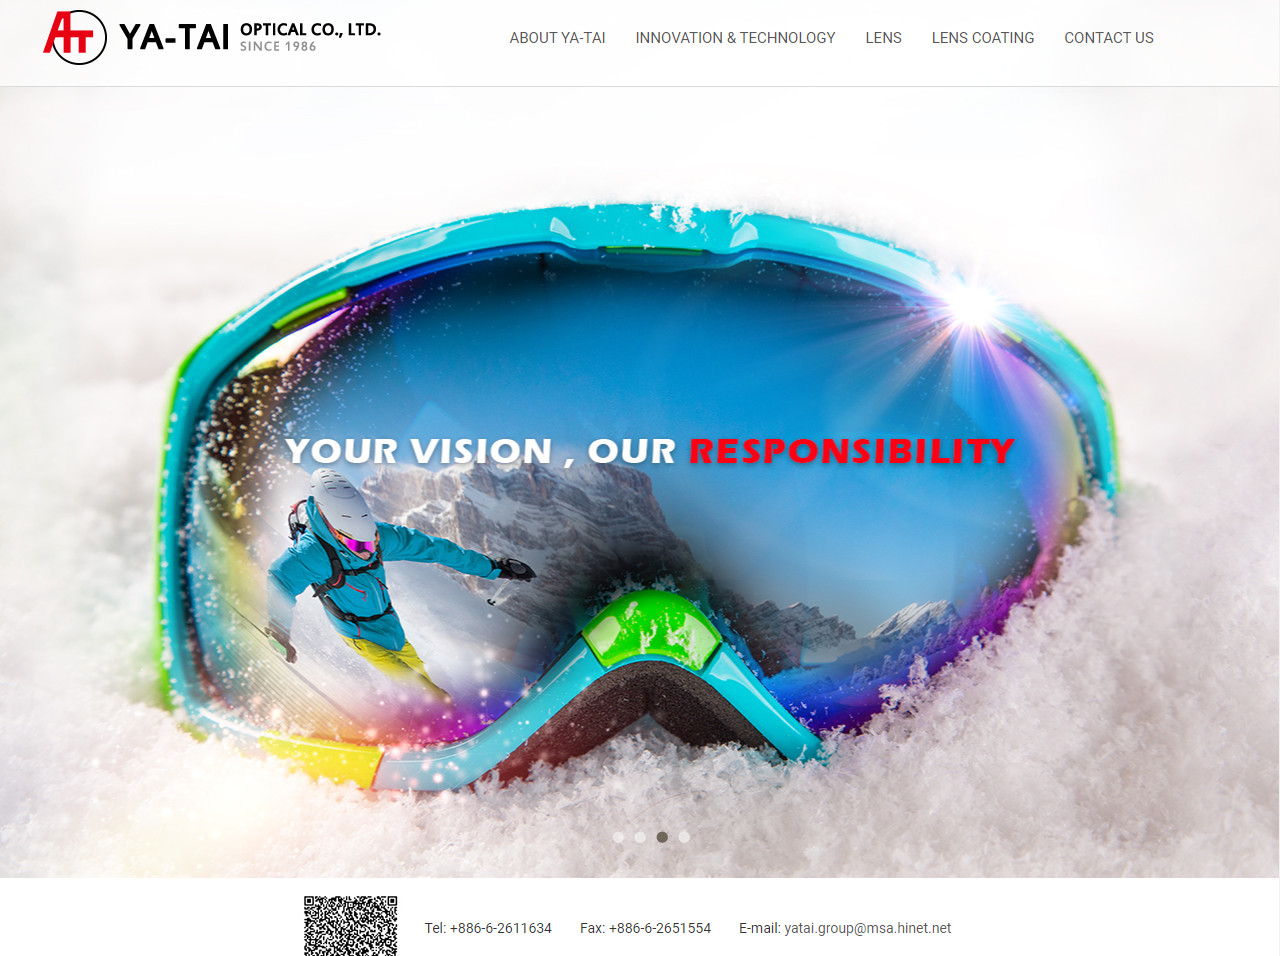 亞泰光學股份有限公司 品牌網站設計
網站設計